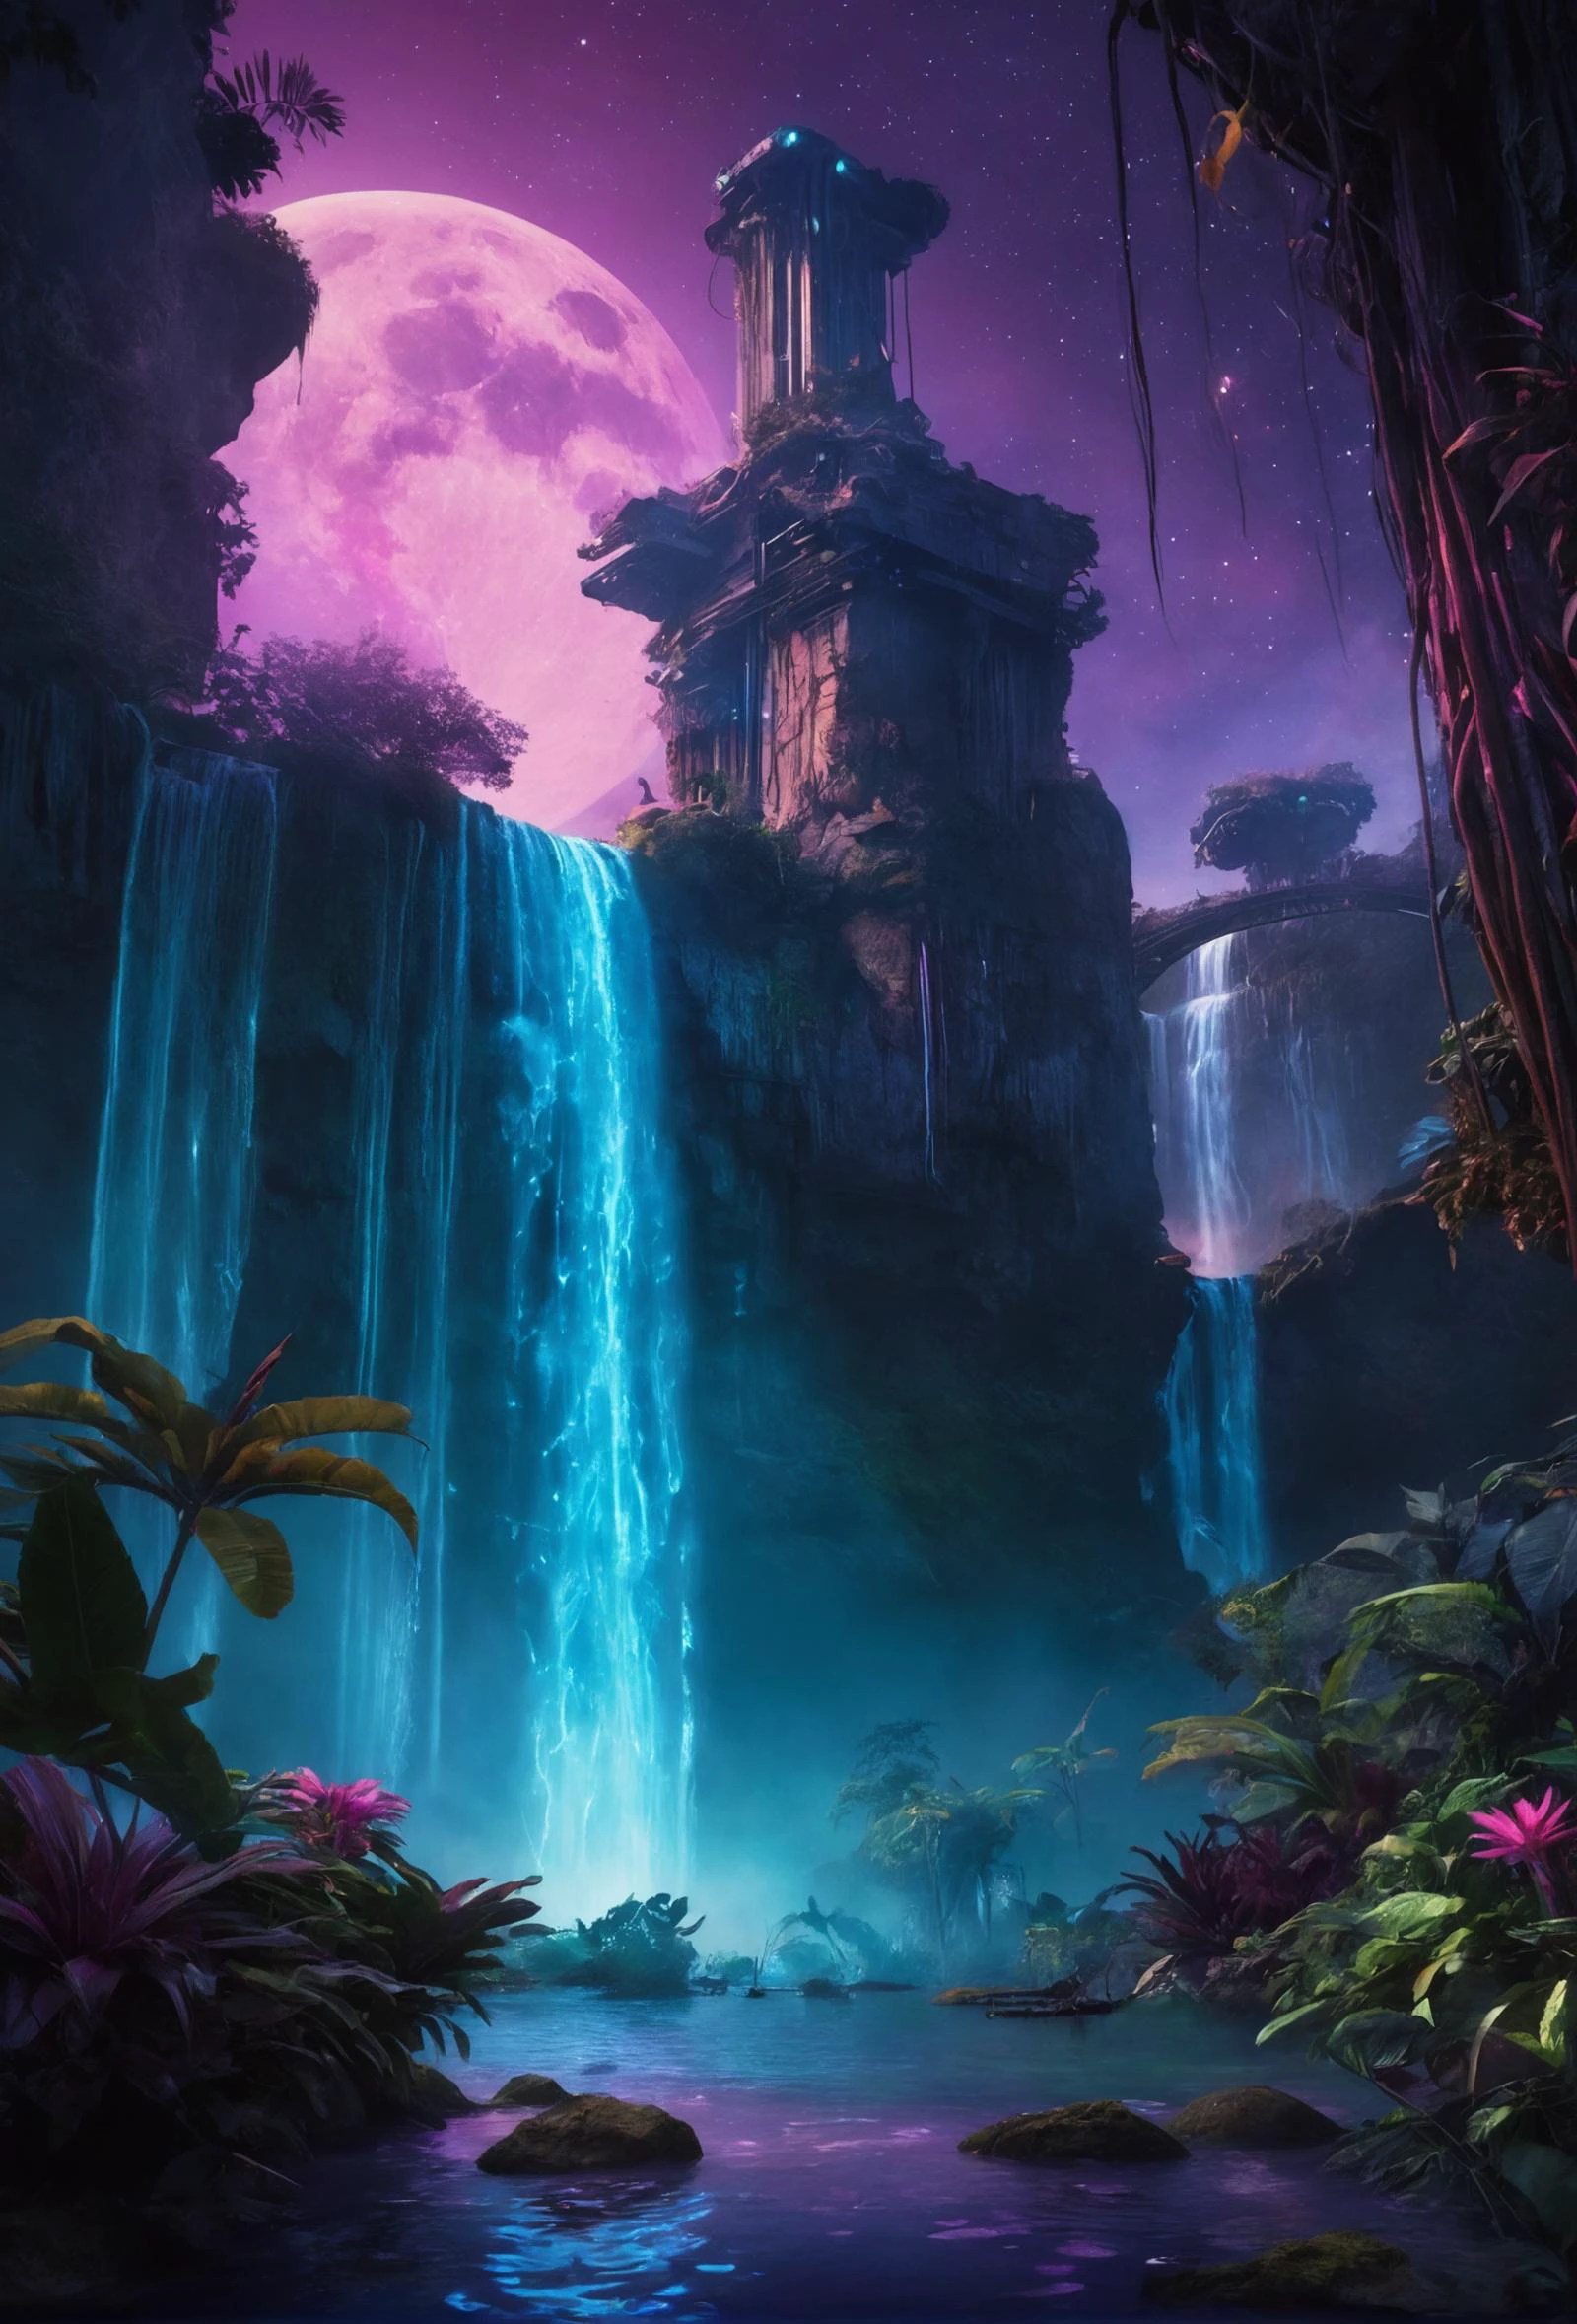 映画のような still 自然とテクノロジーが調和する世界. この未来的なネオンのジャングルで, 滝は液体の光のように流れ落ちる, 珍しい植物が生物発光の生命力で脈打つ, 浮遊するプラットフォームは星々の間の聖域を提供します. 夕暮れの空の下, 風景は鮮やかな青と紫で彩られている, 惑星の神秘的な美しさとそれを尊重する高度な文明の証.â€ . 感情的, 調和のとれた, ビネット, 4k すごい detailed, コダックで撮影, 35mm写真, シャープなフォーカス, 高予算, シネマスコープ, 不機嫌な, すごい, 素敵, フィルムグレイン, 粒状, 自然とテクノロジーが調和する世界. この未来的なネオンのジャングルで, 滝は液体の光のように流れ落ちる, 珍しい植物が生物発光の生命力で脈打つ, 浮遊するプラットフォームは星々の間の聖域を提供します. 夕暮れの空の下, 風景は鮮やかな青と紫で彩られている, 惑星の神秘的な美しさとそれを尊重する高度な文明の証.â€, 居心地の良い, 補色, ロマンチック, 完璧な構成, 冒険好きな, 映画のような, 豊かな深みのある色, 美しく、細部まで精巧で、見事な、素晴らしい、クラシックで現代的な、細かいディテール, アンビエント ドラマチック 息を呑むほど プロフェッショナル 完全作曲, 最高, すごい, 素晴らしい, 個性的, 素晴らしい, 芸術的, 純粋な, とても感動的, かわいい背景, 感動的な, 魔法のような雰囲気, クリエイティブ, ポジティブ, 素敵な, 素晴らしい, エレガント